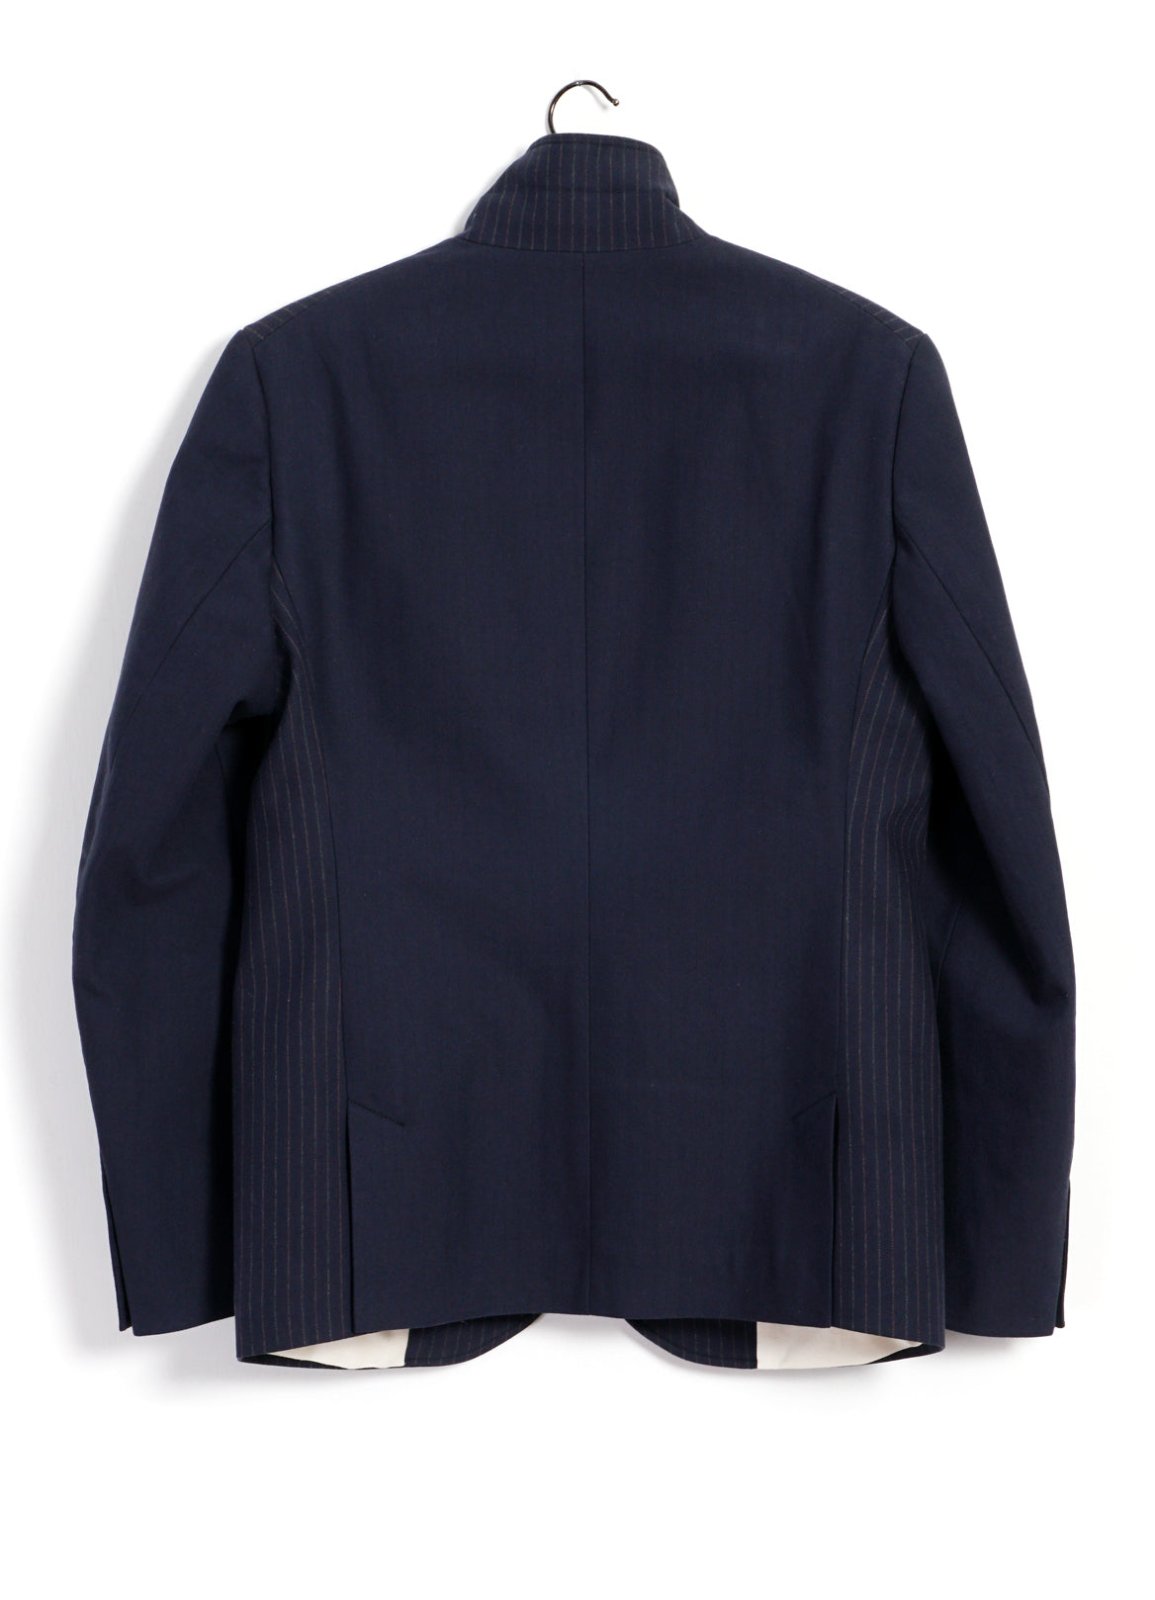 HANSEN GARMENTS - ANKER | Four Button Classic Blazer | Blue Pin - HANSEN Garments